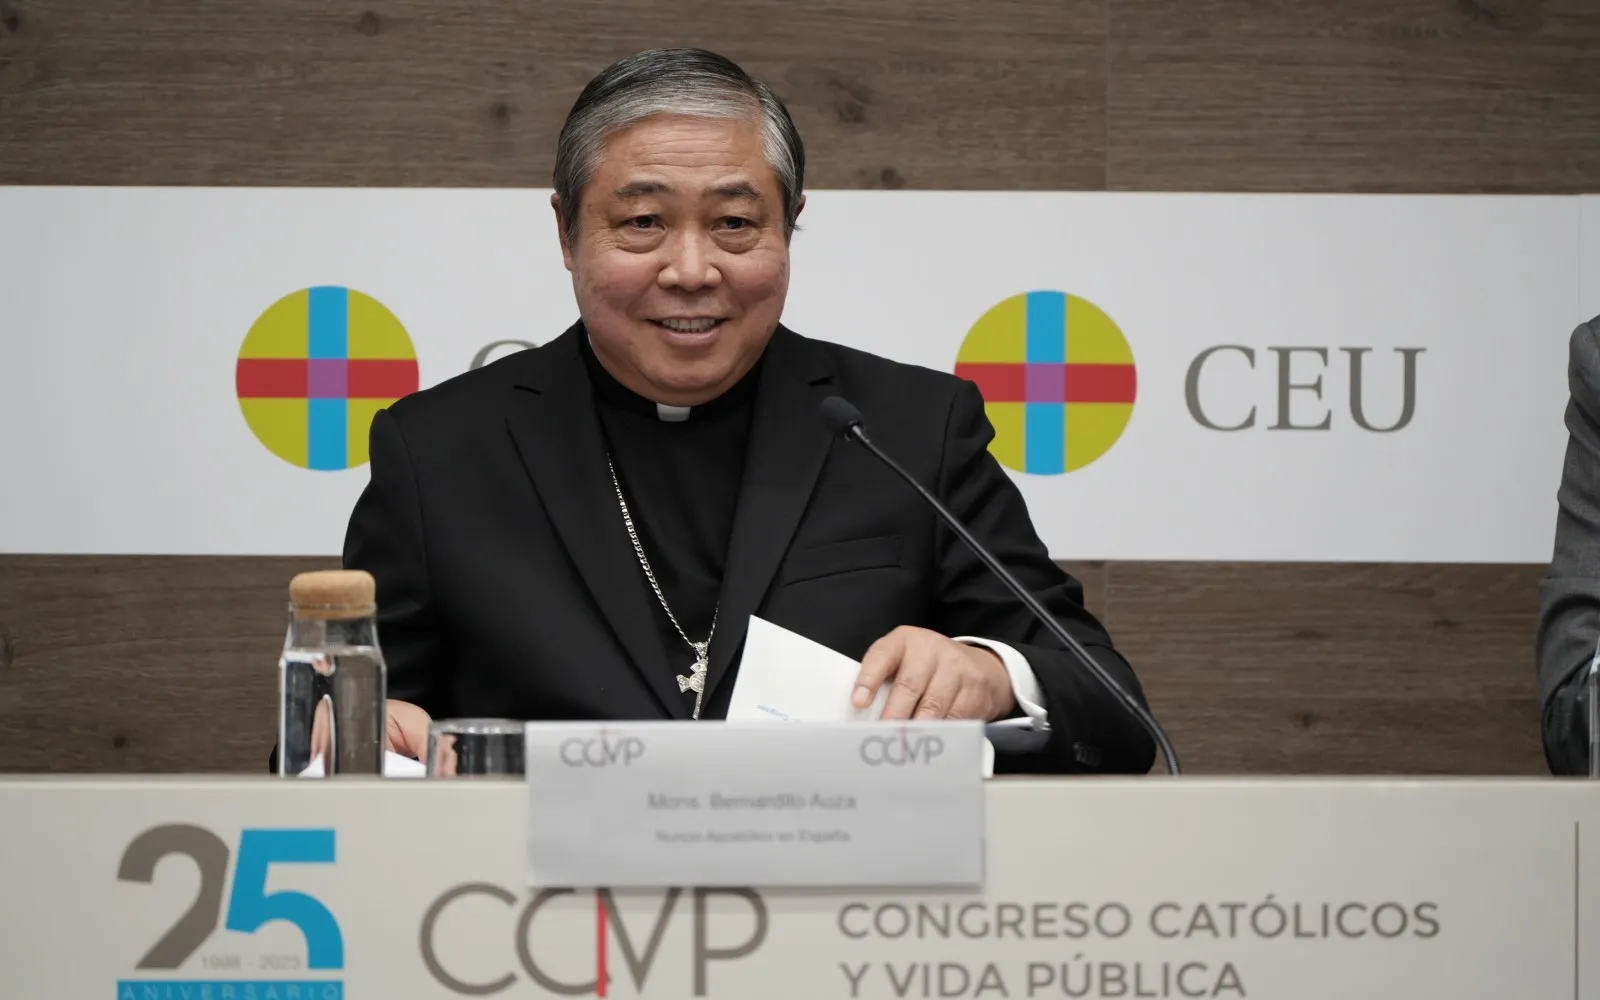 Mons. Bernardito Aúza, Nuncio Apostólico en España participa en el XXV Congreso Católicos y Vida Pública en Madrid.?w=200&h=150